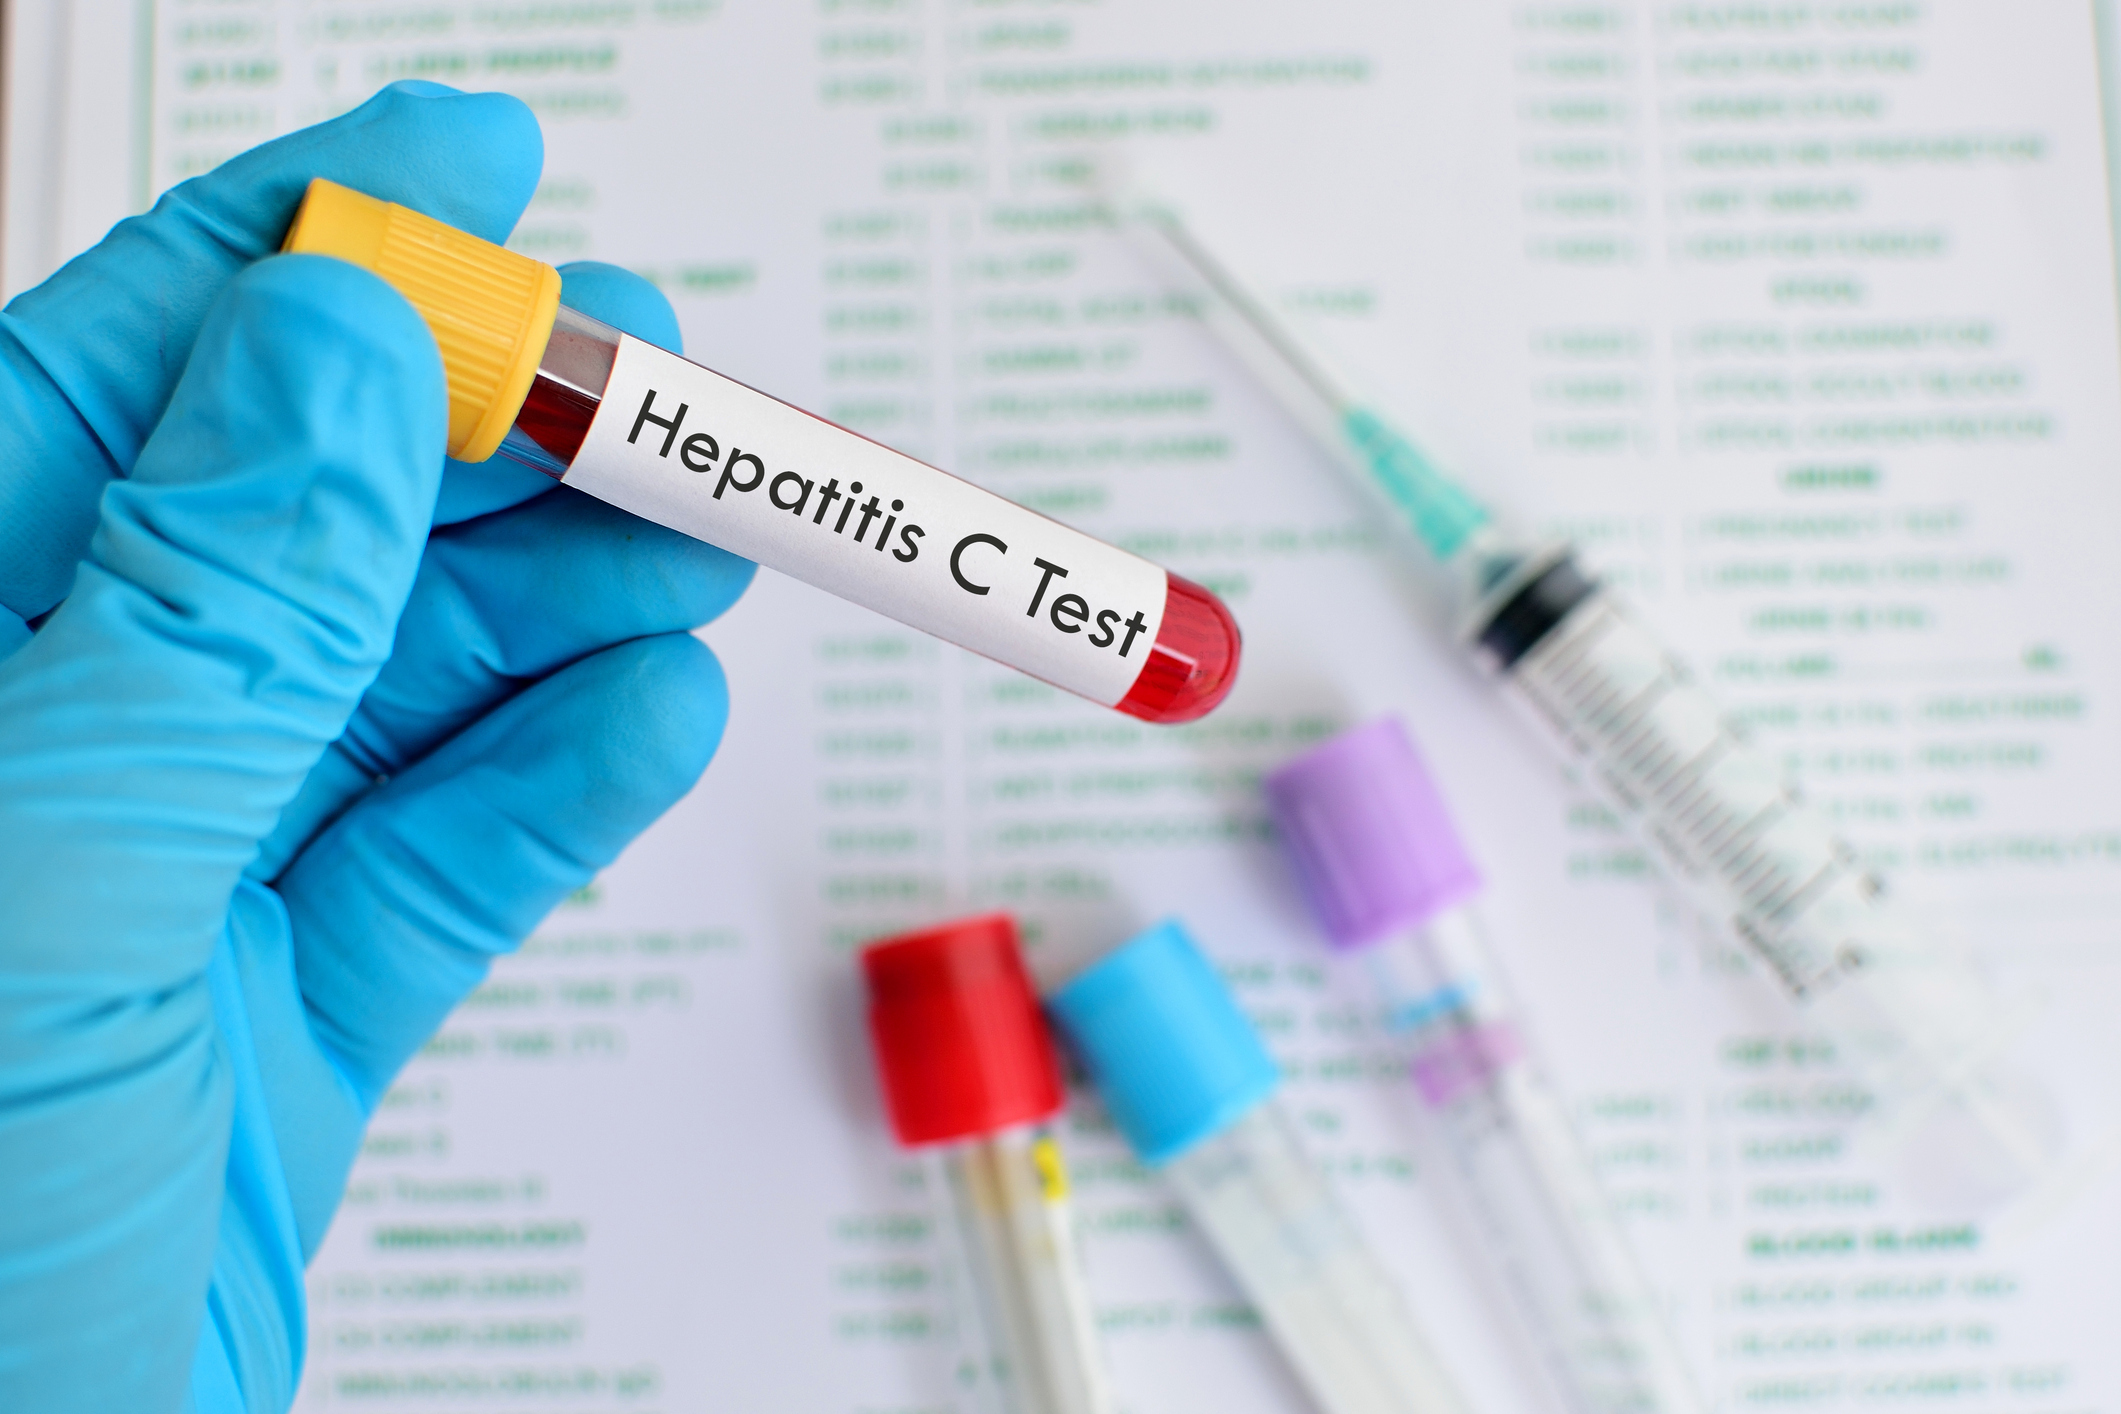  Erradicar hepatitis C en México es posible, pero falta mejorar su detección